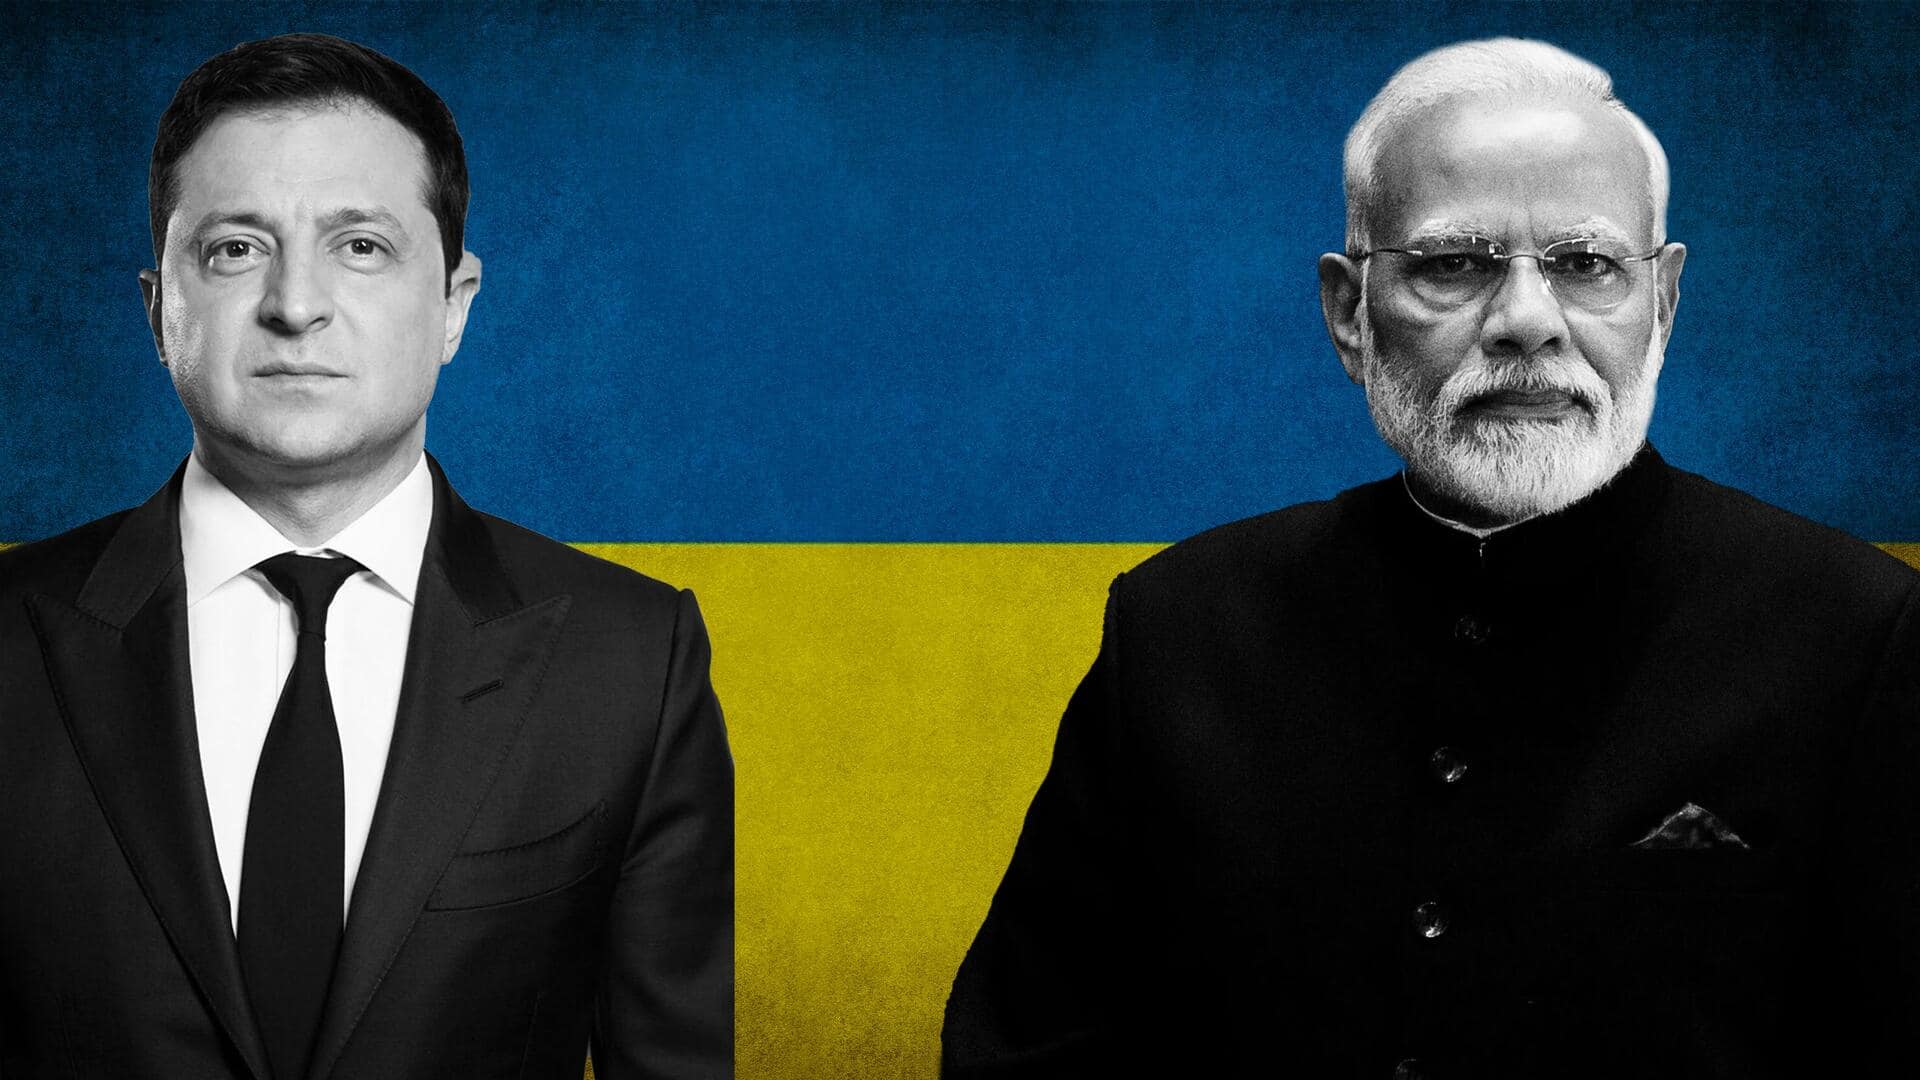 यूक्रेन के राष्ट्रपति वोलोडिमीर जेलेंस्की ने प्रधानमंत्री नरेंद्र मोदी को लिखा पत्र, जानिए क्या कहा